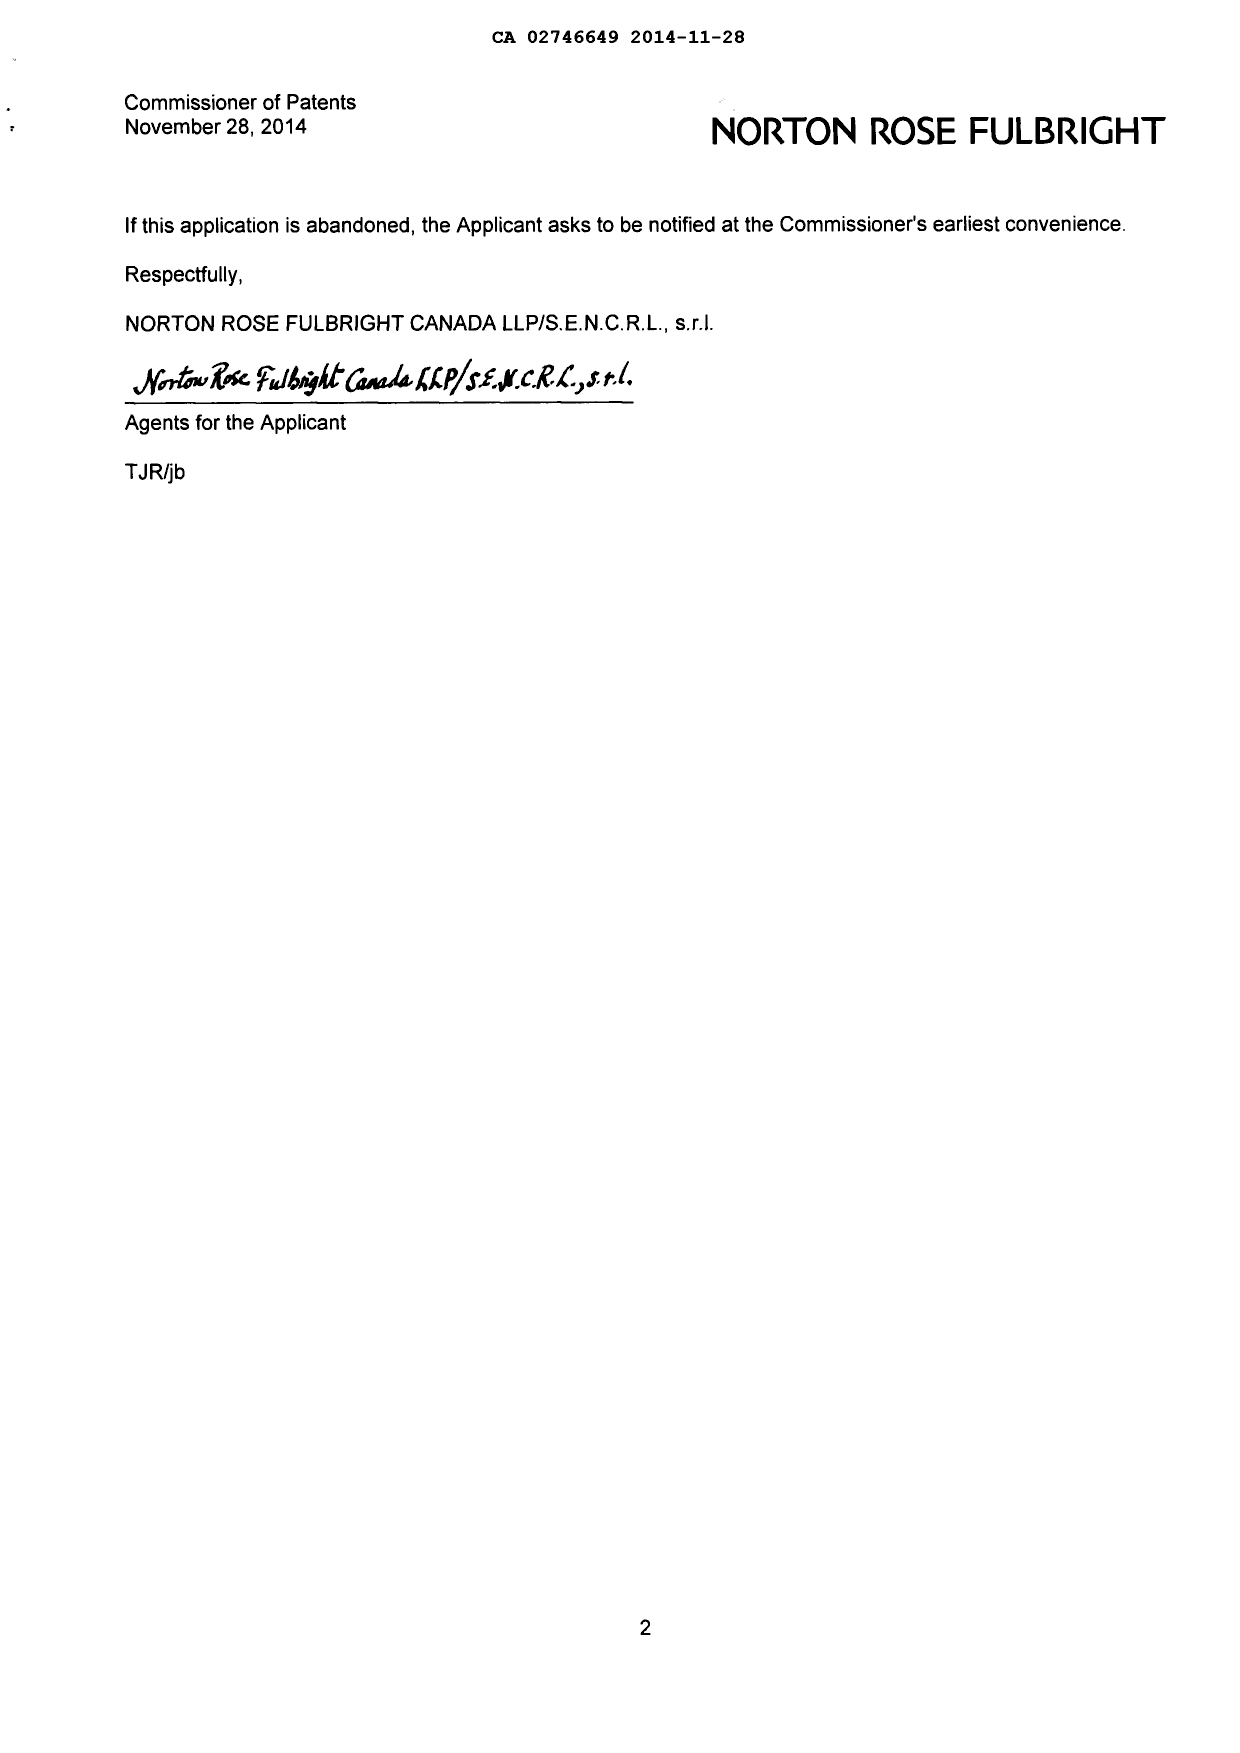 Document de brevet canadien 2746649. Poursuite-Amendment 20131228. Image 2 de 2